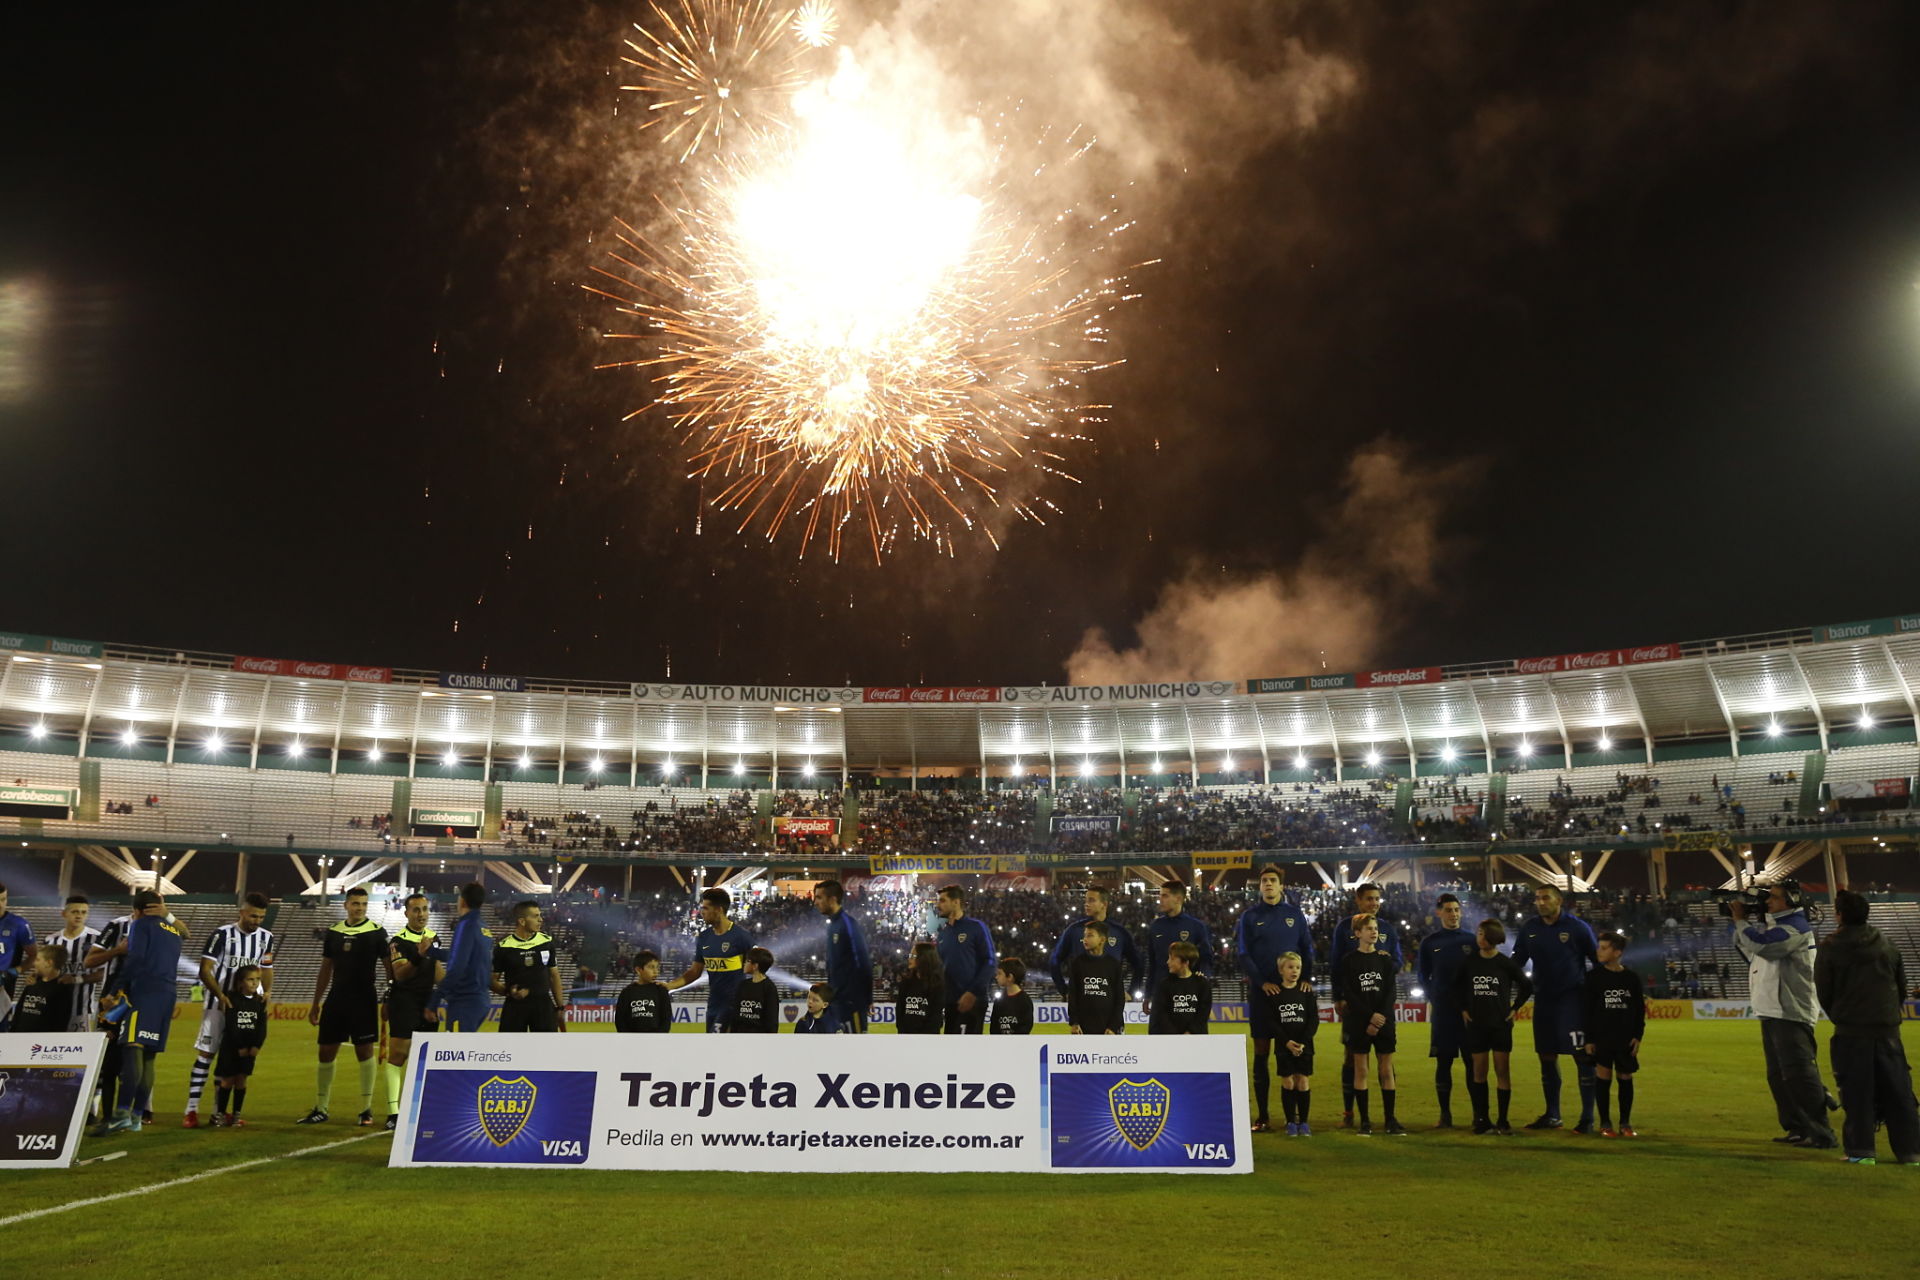 Los jugadores de Boca frente al cartel de Tarjeta Xeneize